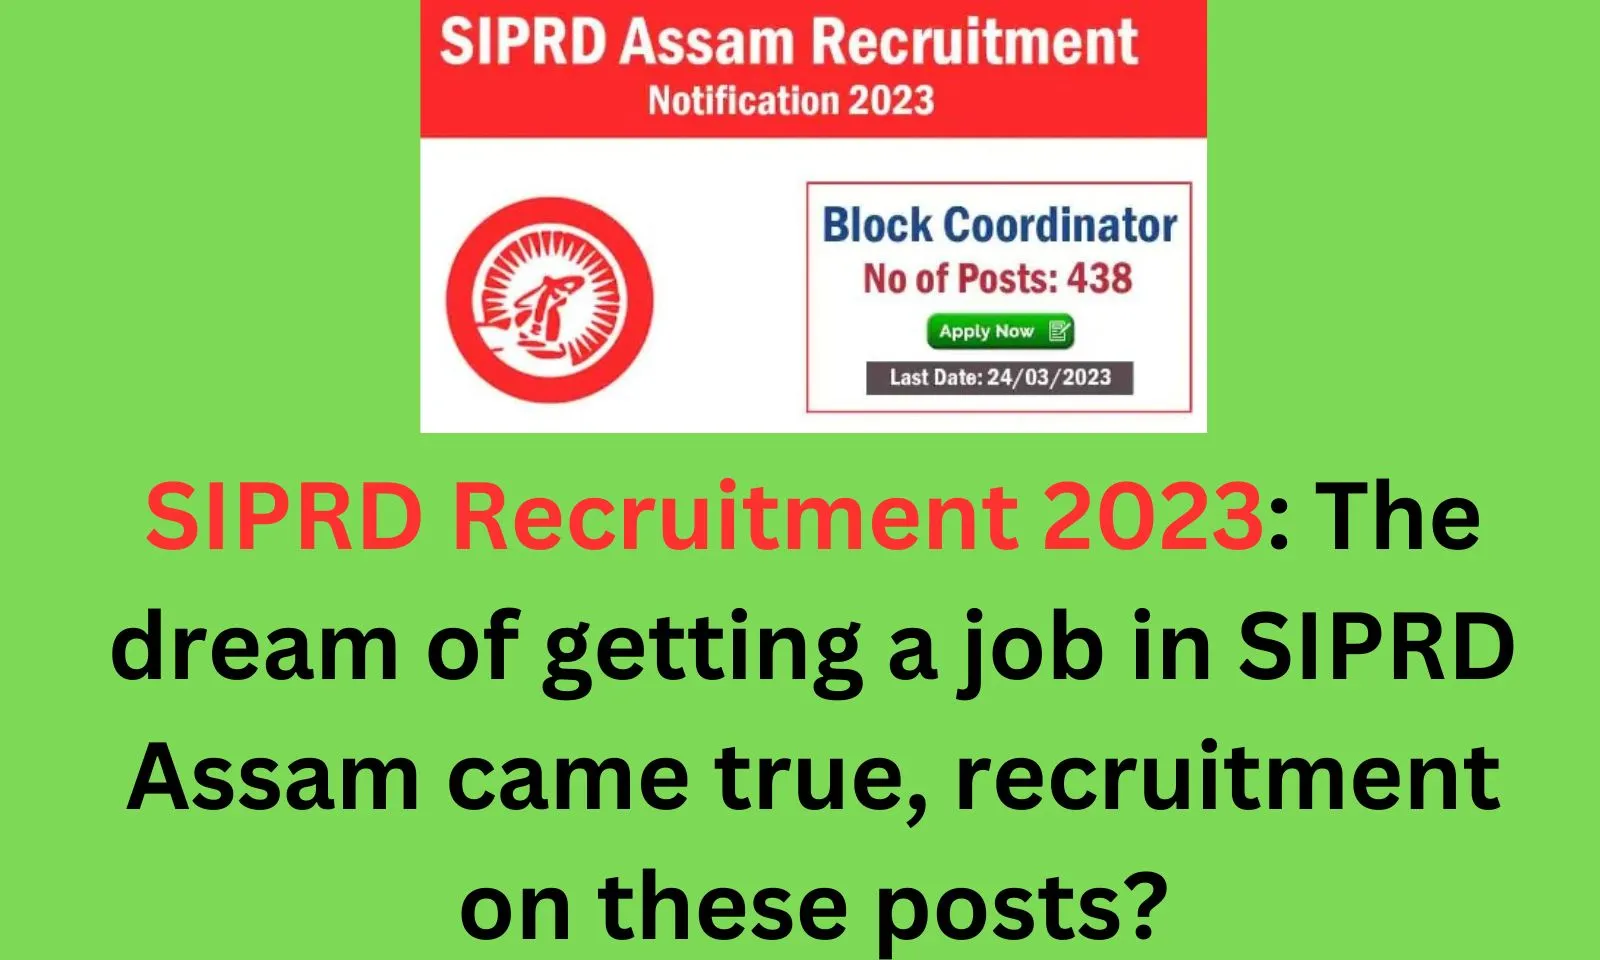 Assam Career: SIPRD Recruitment 2023